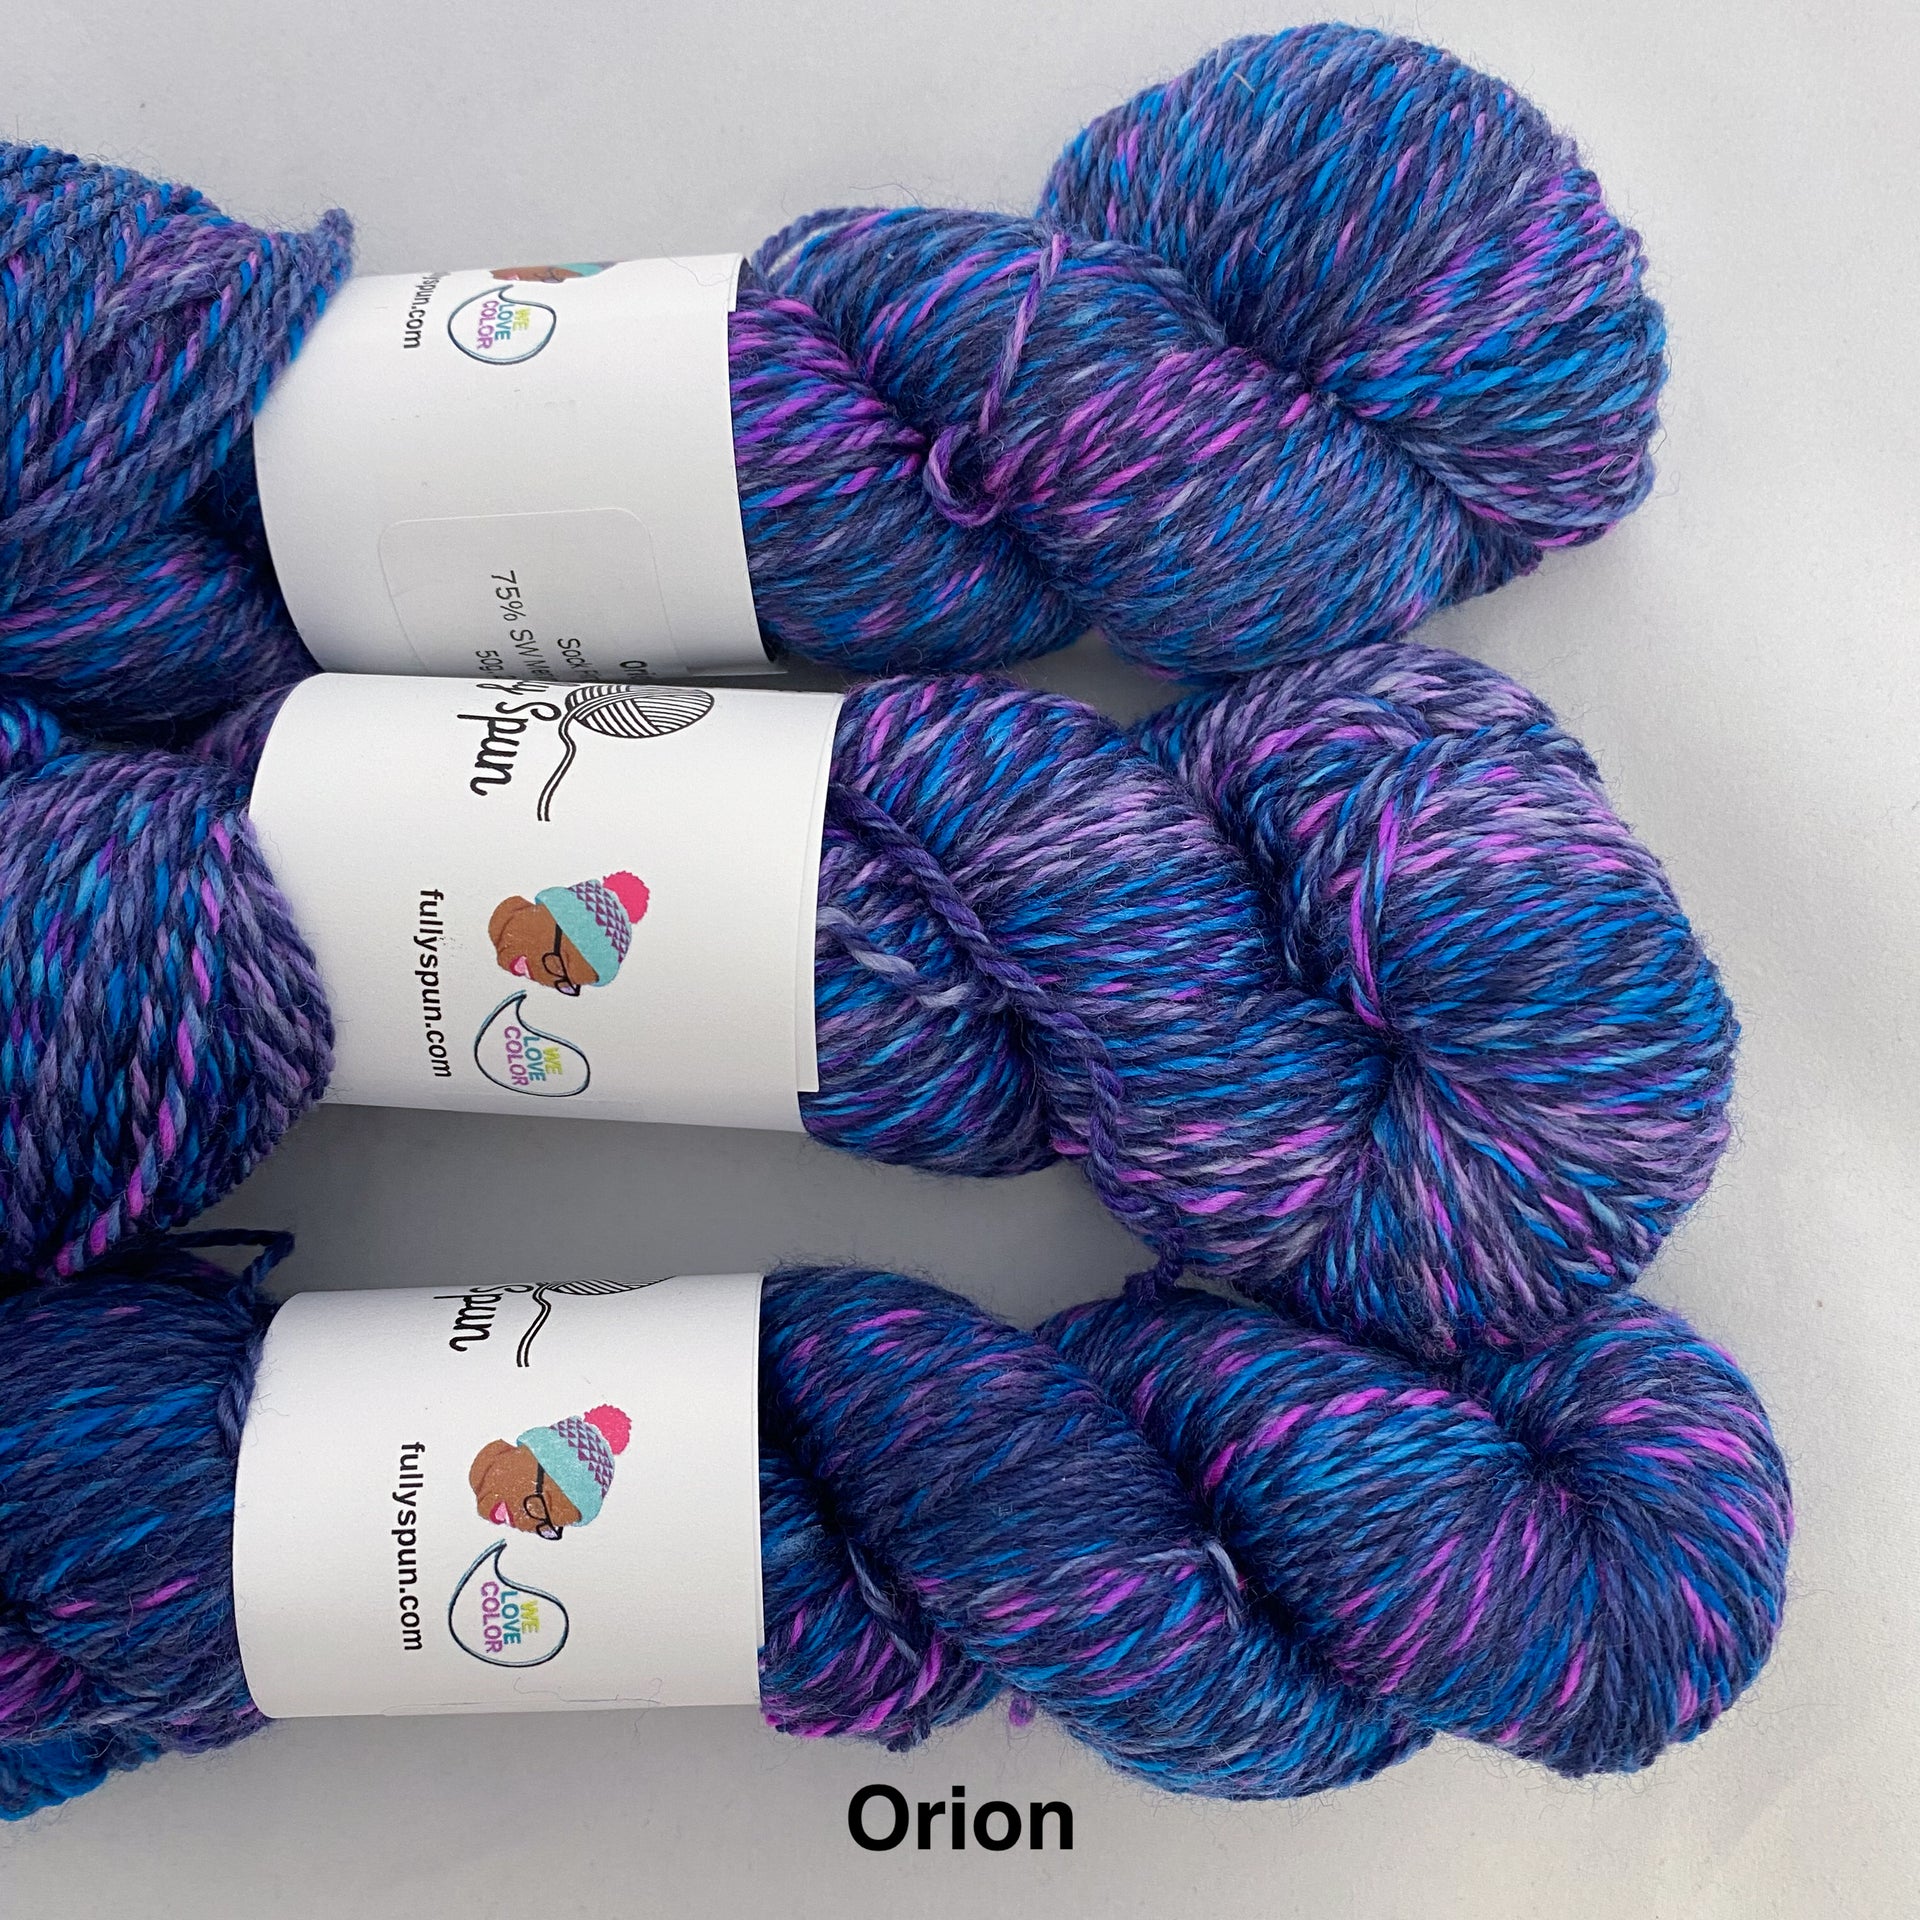 Fully Spun Marled yarn - Orion